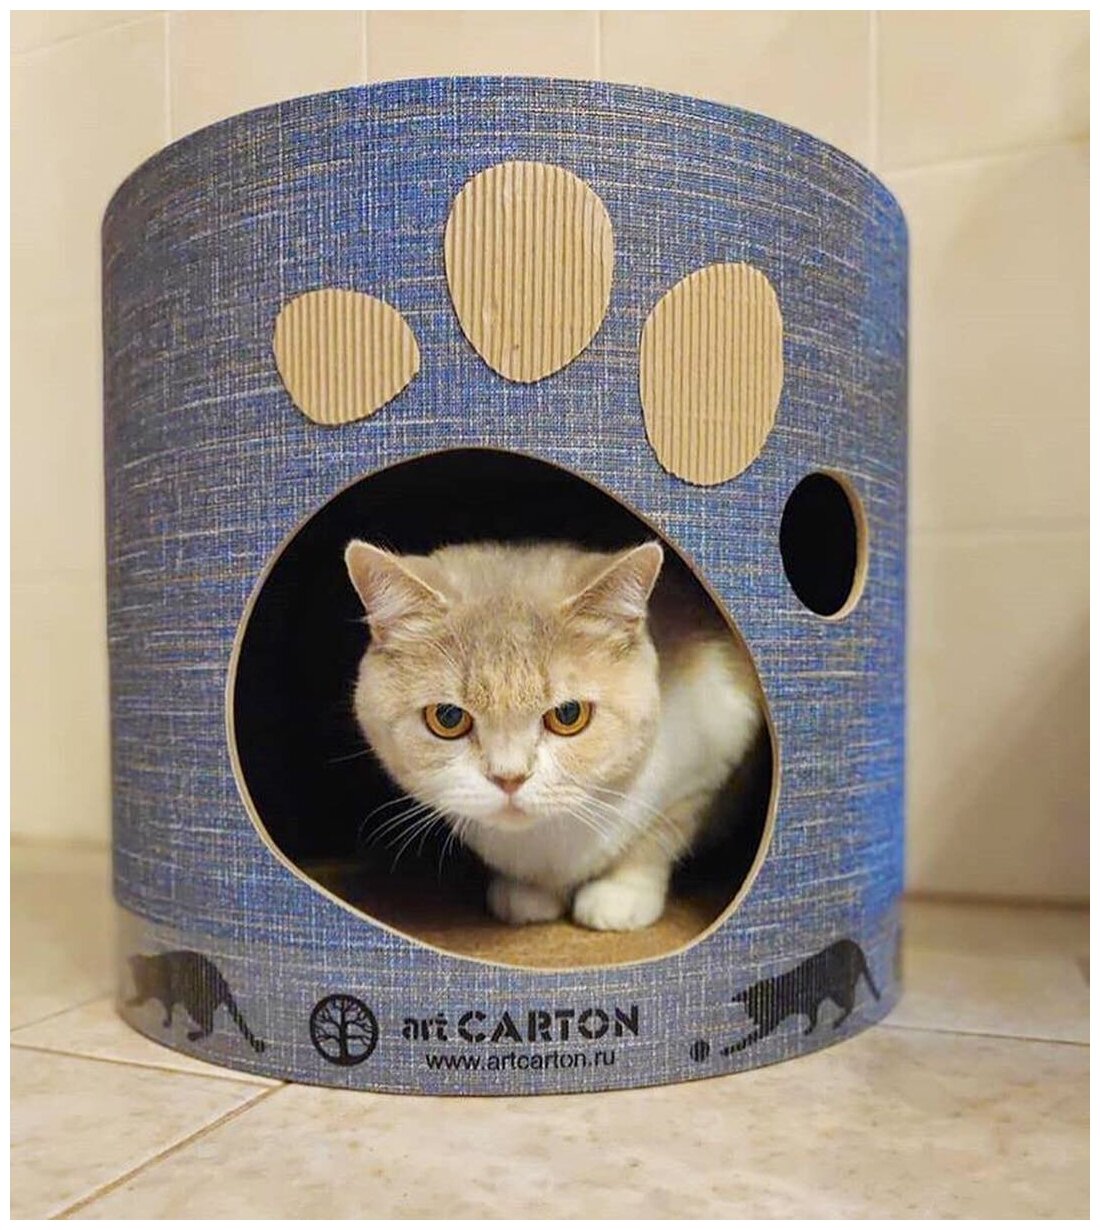 Домик с когтеточкой из картона TOWER диаметр 41 см арткартон для крупных кошек до 6 кг с двумя уровнями и жестким бортиком. Срок службы до 5-ти лет. - фотография № 17